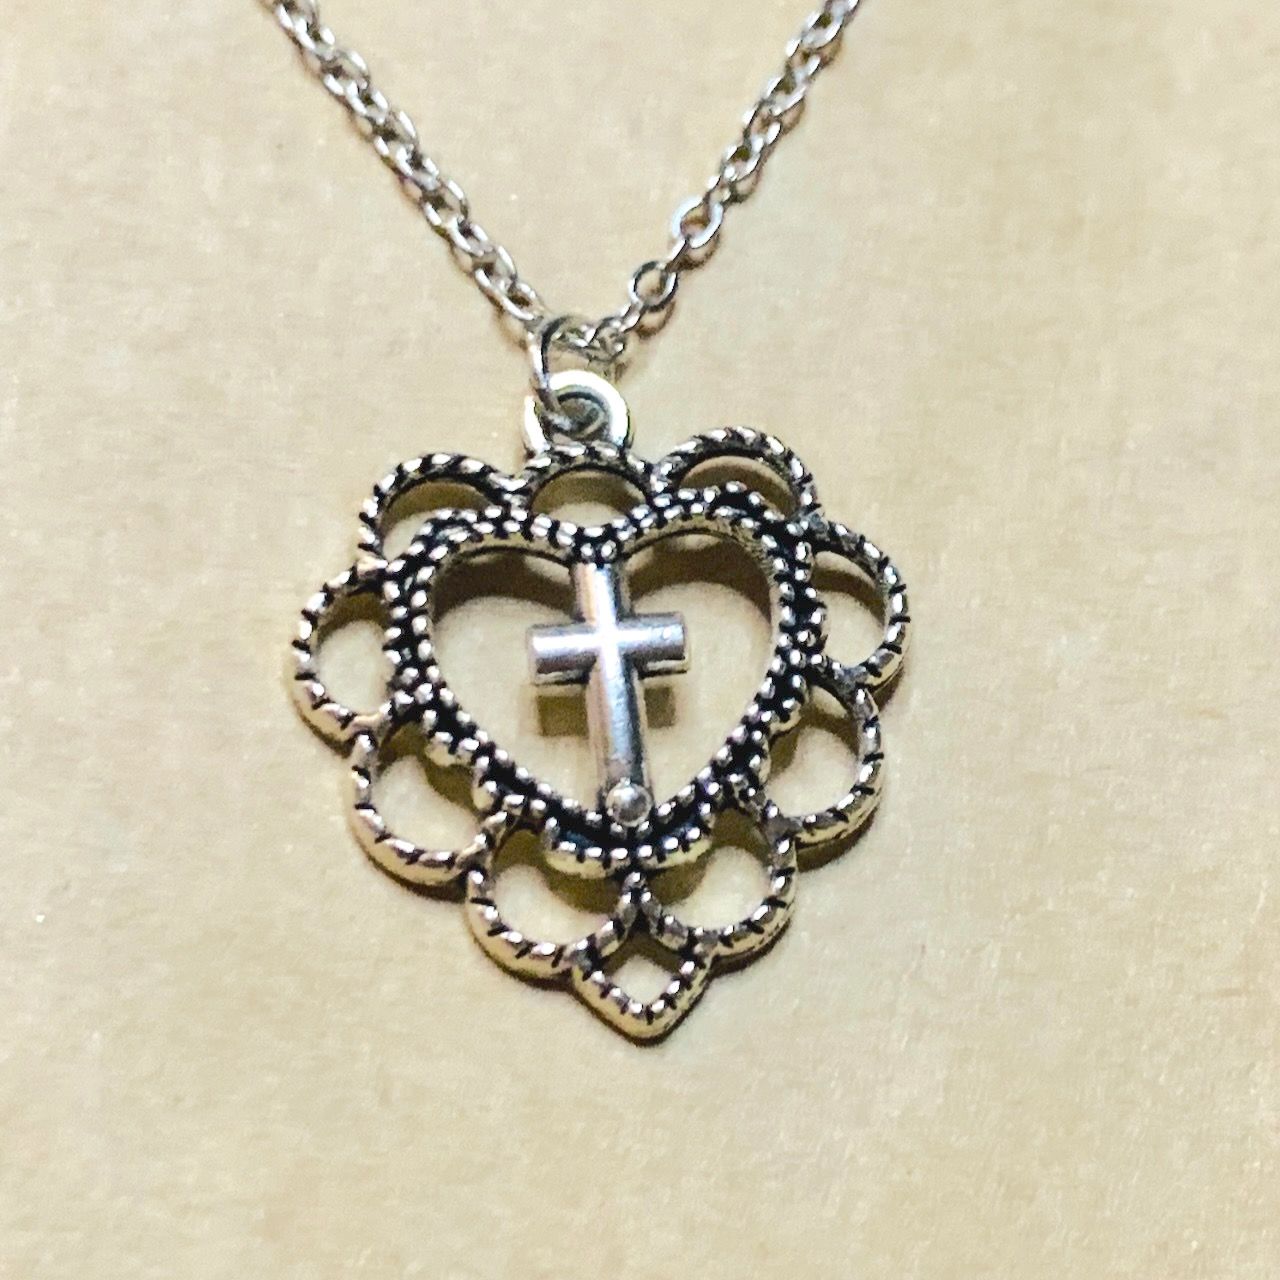 Кулон металлический "Сердце с узорами полое внутри крест", цвет "серебро",  размер 21*20 мм, на металлической цепочке